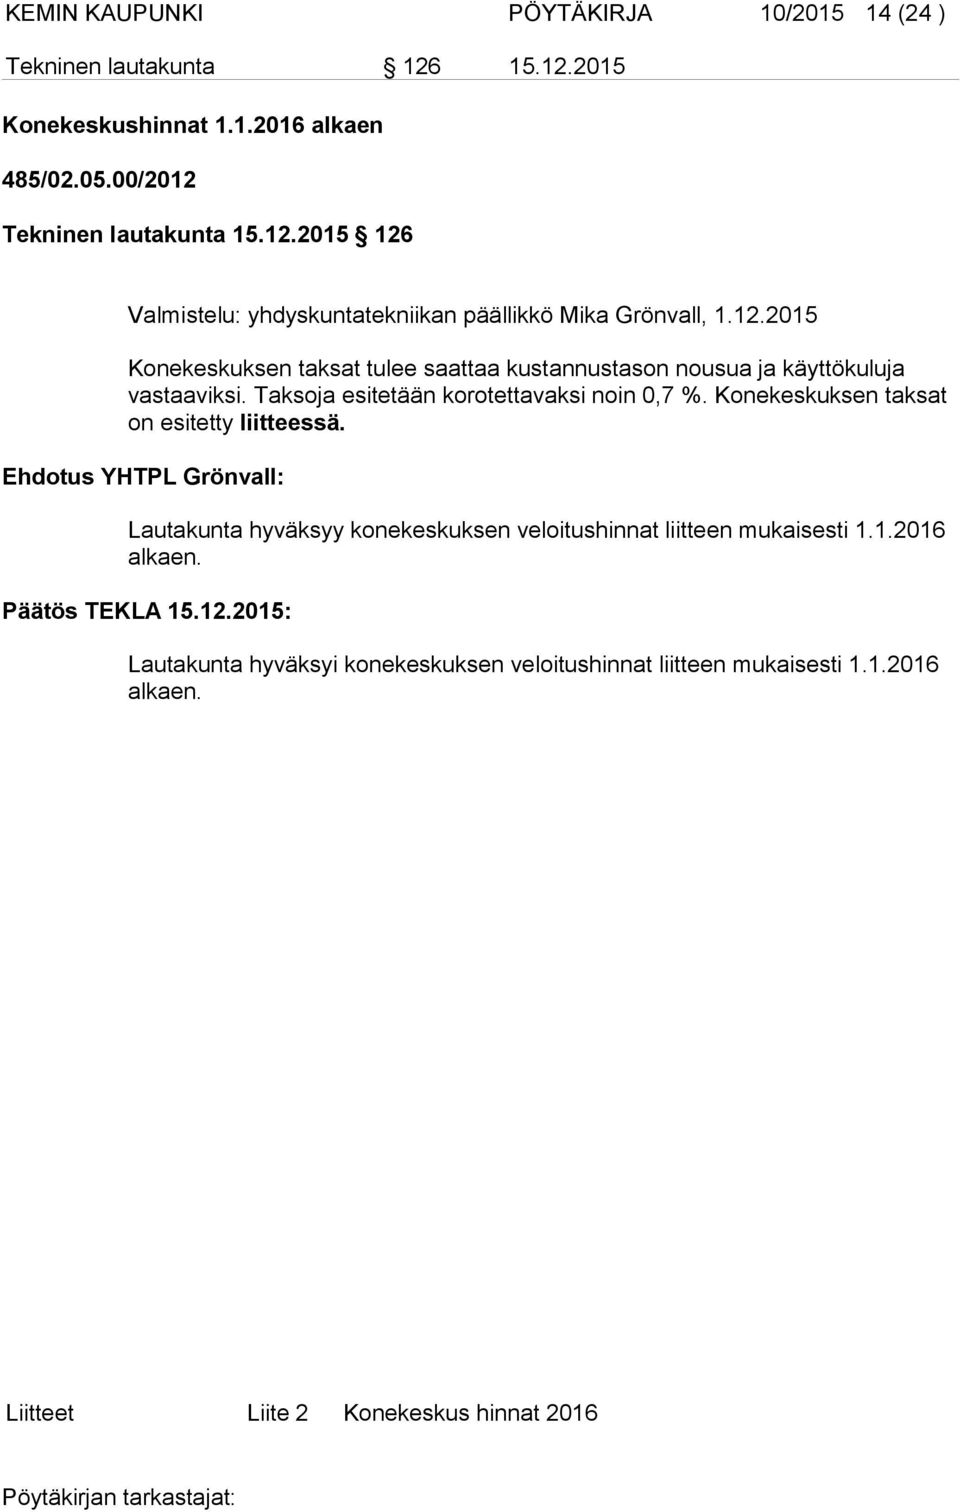 Konekeskuksen taksat on esitetty liitteessä. Ehdotus YHTPL Grönvall: Lautakunta hyväksyy konekeskuksen veloitushinnat liitteen mukaisesti 1.1.2016 alkaen.